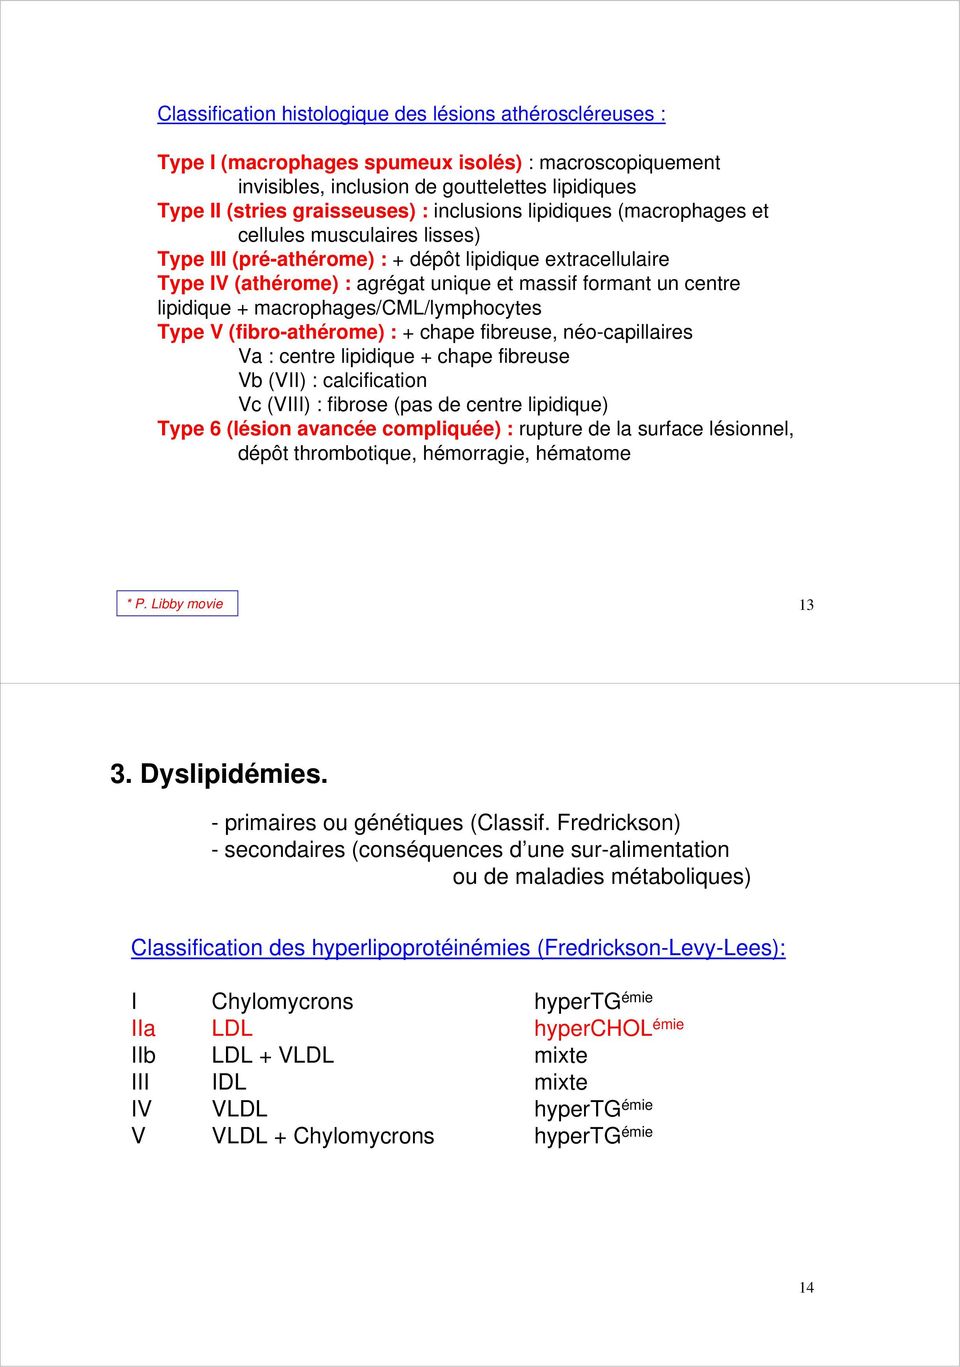 lipidique + macrophages/cml/lymphocytes Type V (fibro-athérome) : + chape fibreuse, néo-capillaires Va : centre lipidique + chape fibreuse Vb (VII) : calcification Vc (VIII) : fibrose (pas de centre